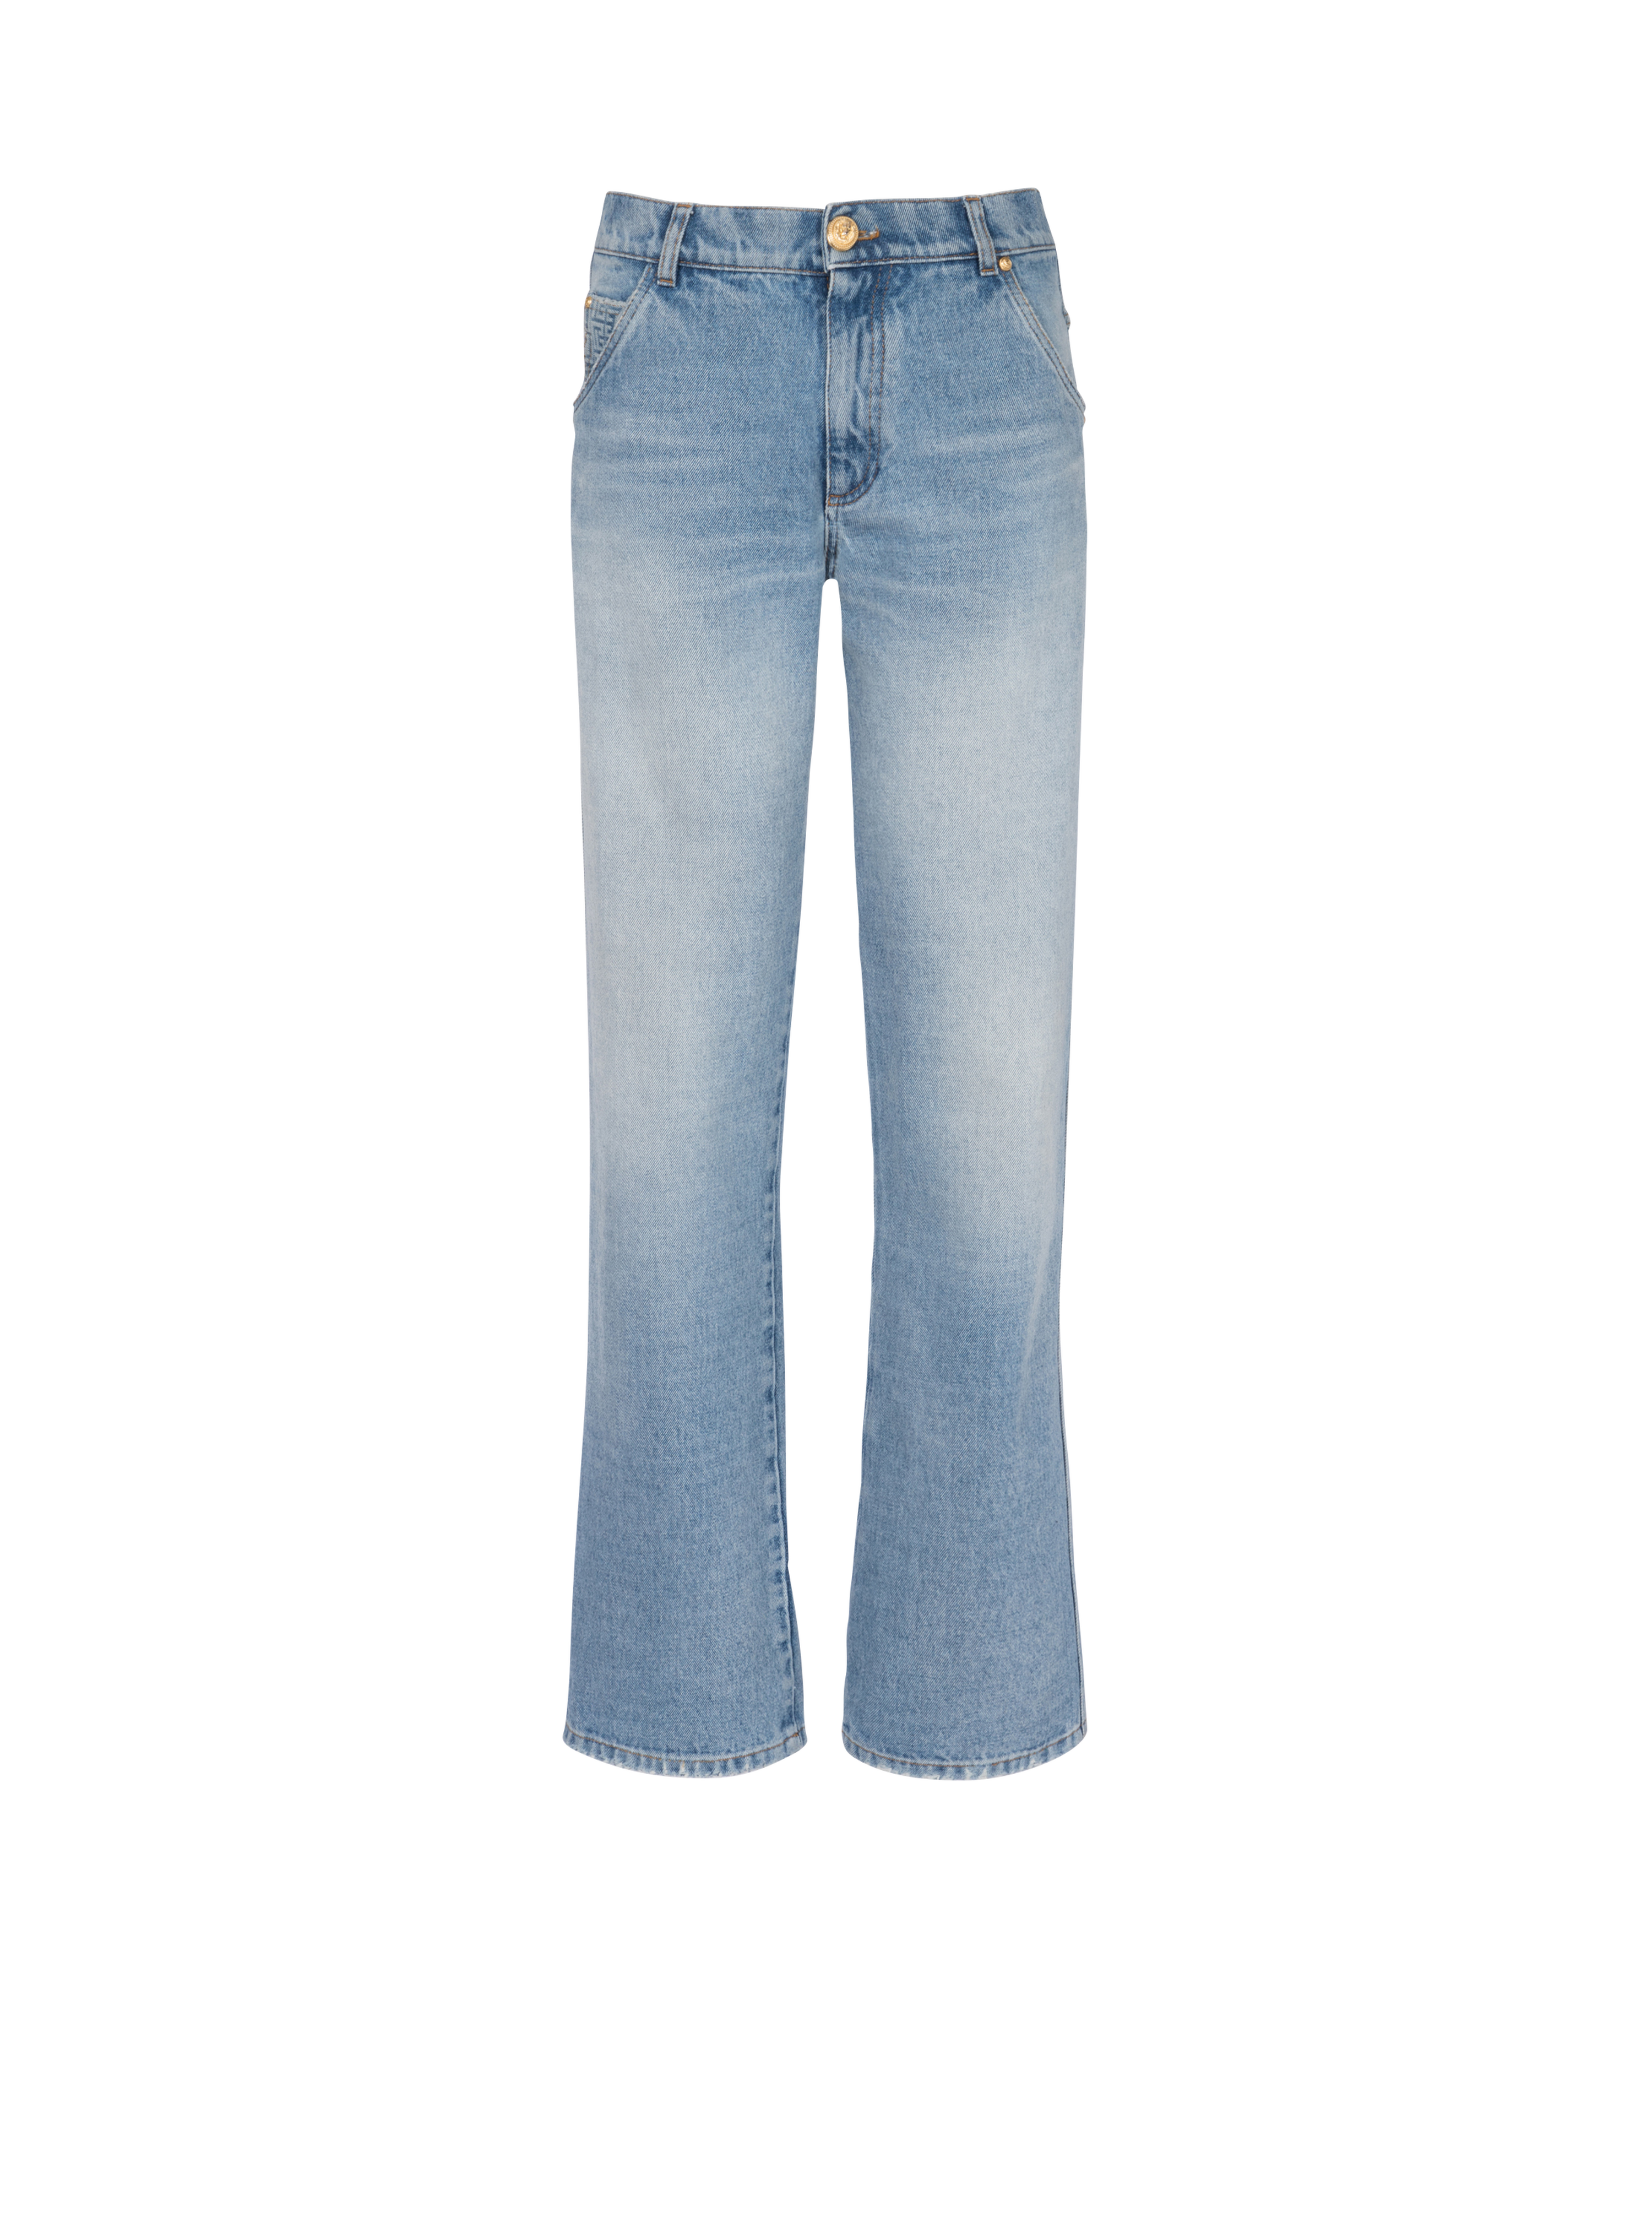 Wide-leg faded denim jeans, blue